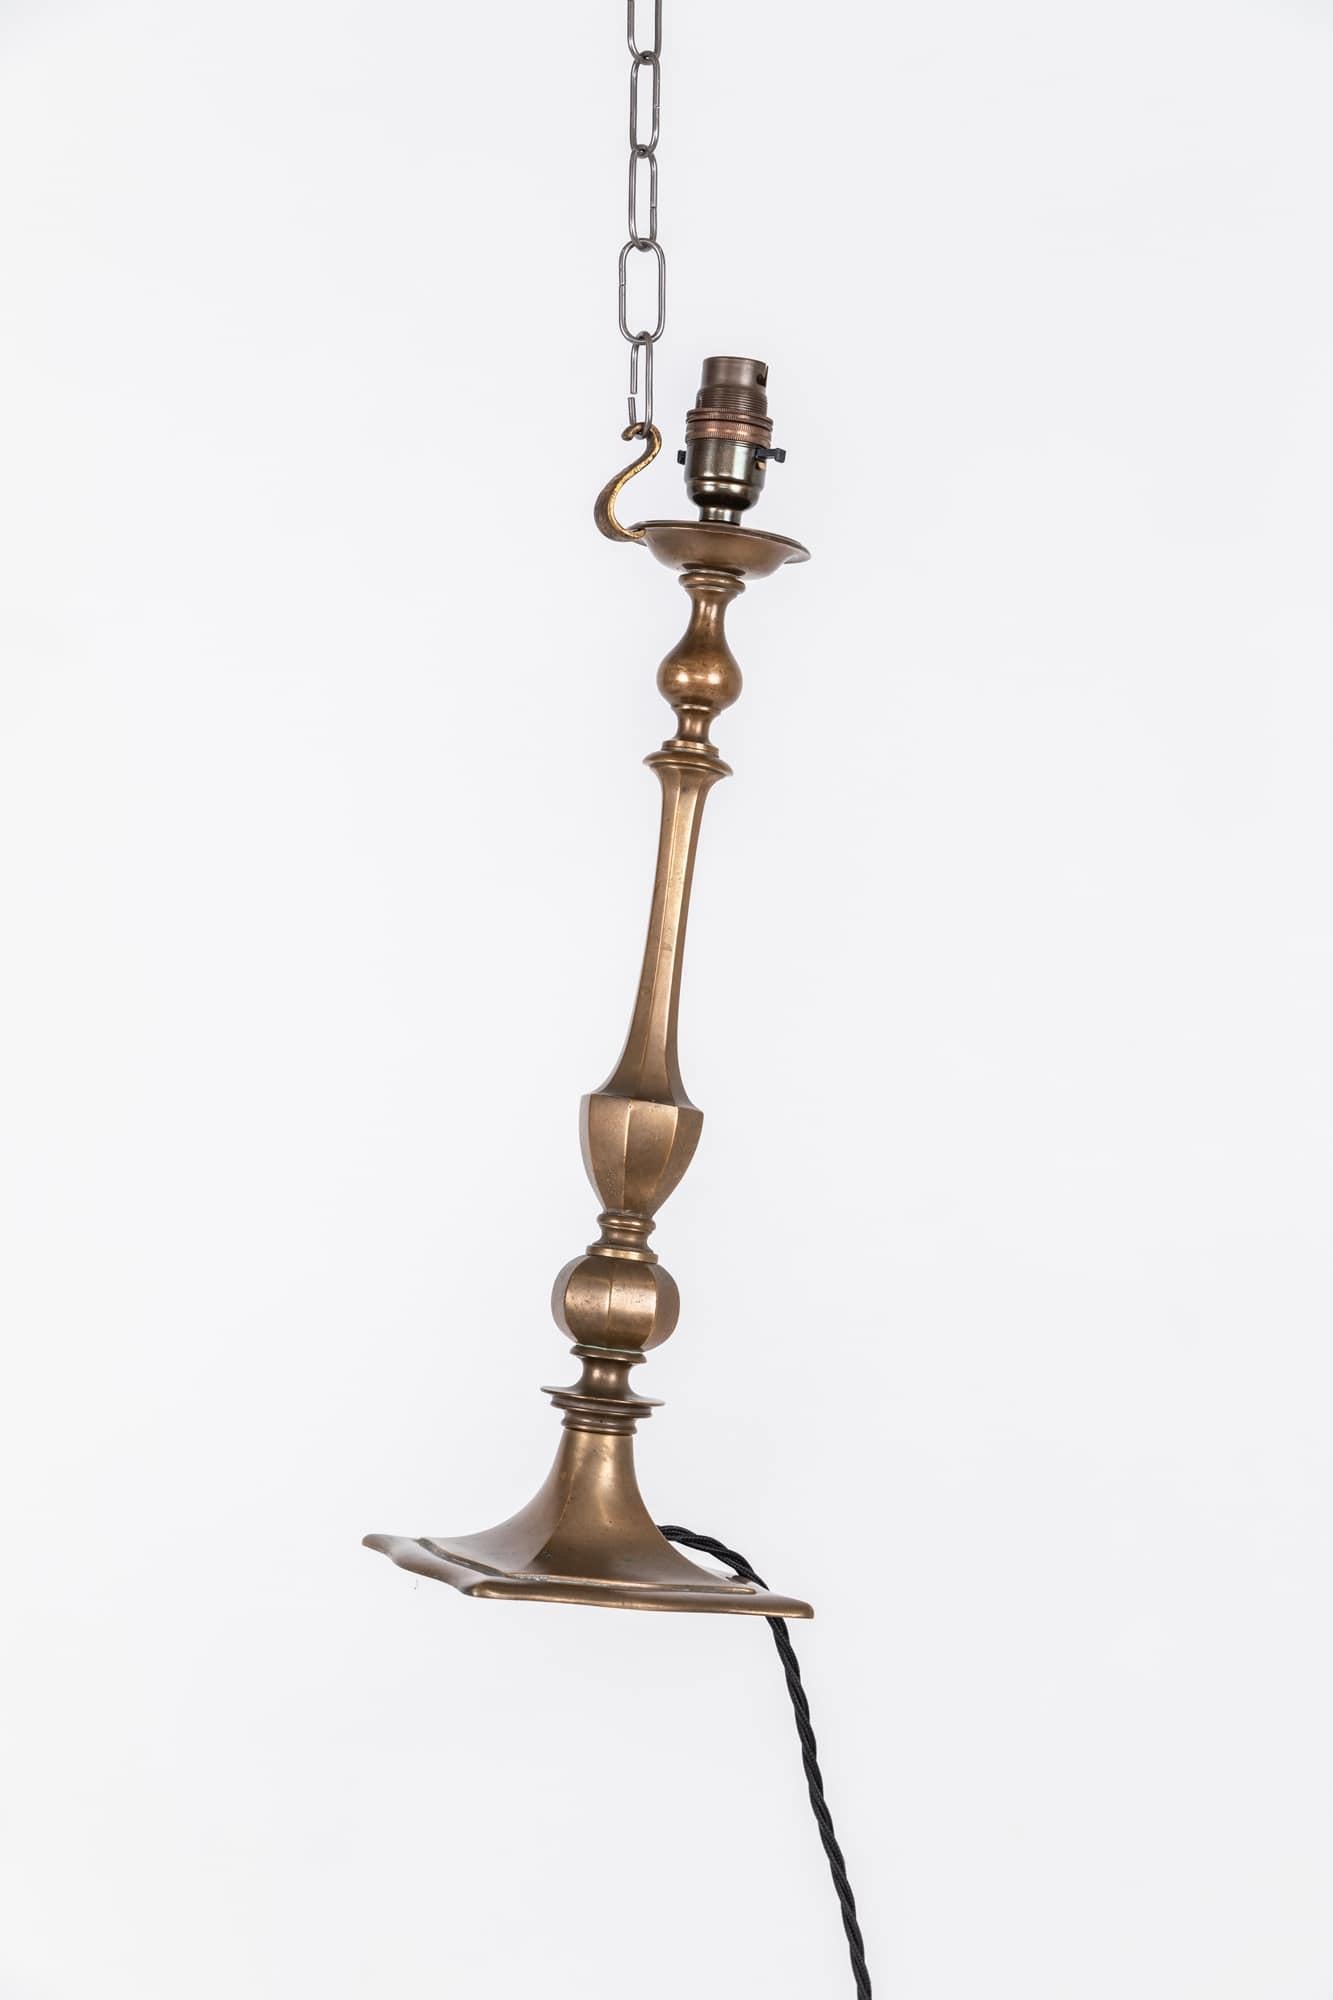 Eine sehr attraktive edwardianische Messing-Tischlampe, um 1910

Hochwertige, schwere Messingkonstruktion mit schöner Alterspatina.

Neu verdrahtet mit 2 m schwarzem verdrilltem Kabel und 3-poligem BS-Stecker.
